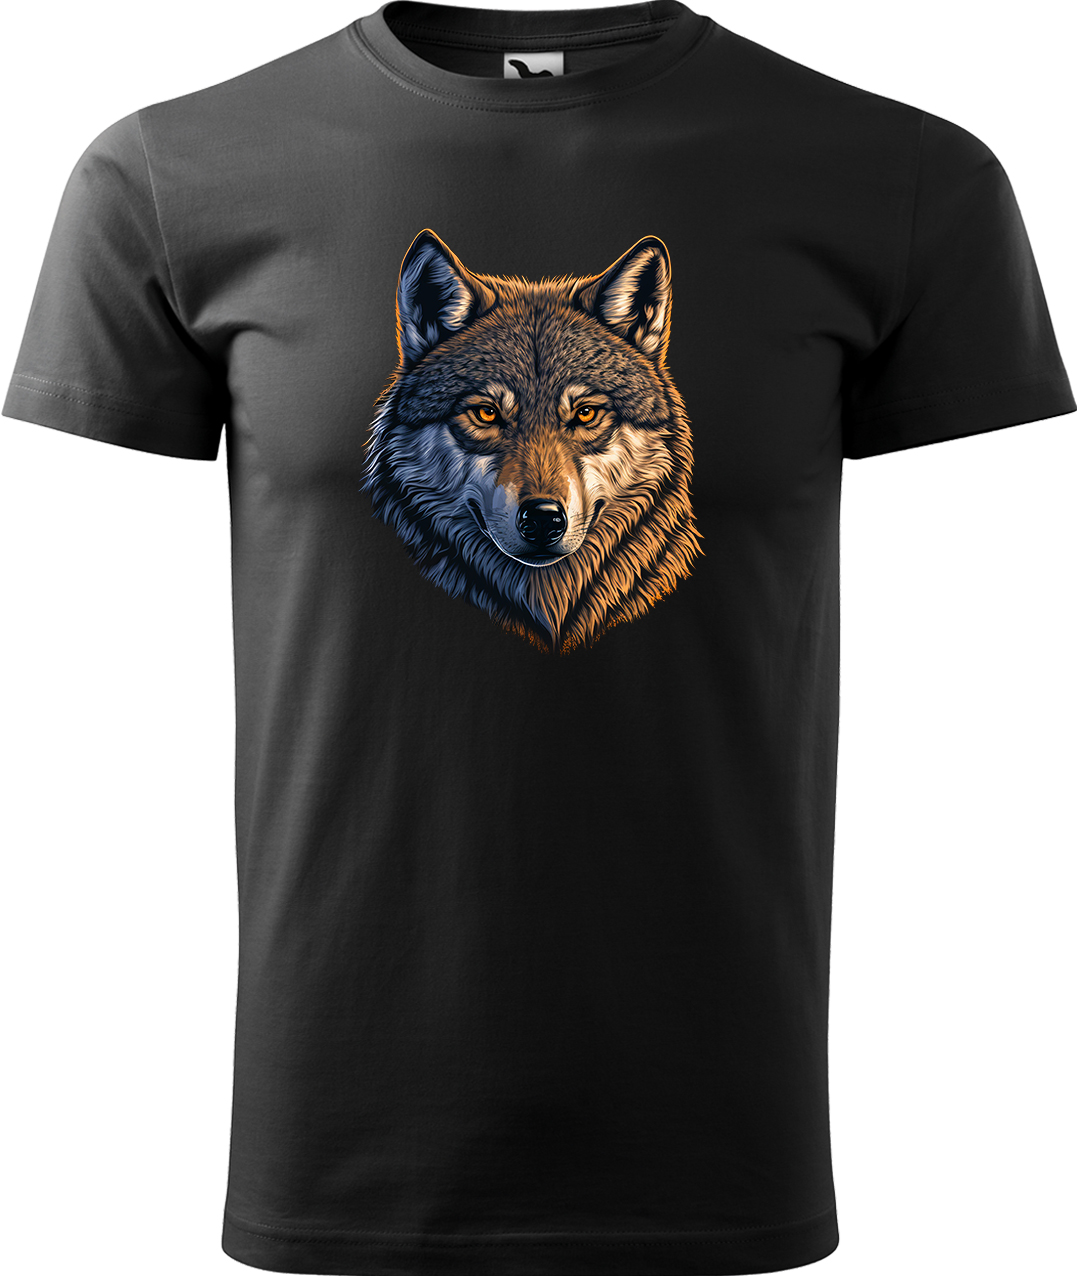 Pánské tričko s vlkem - Hlava vlka Velikost: 3XL, Barva: Černá (01), Střih: pánský